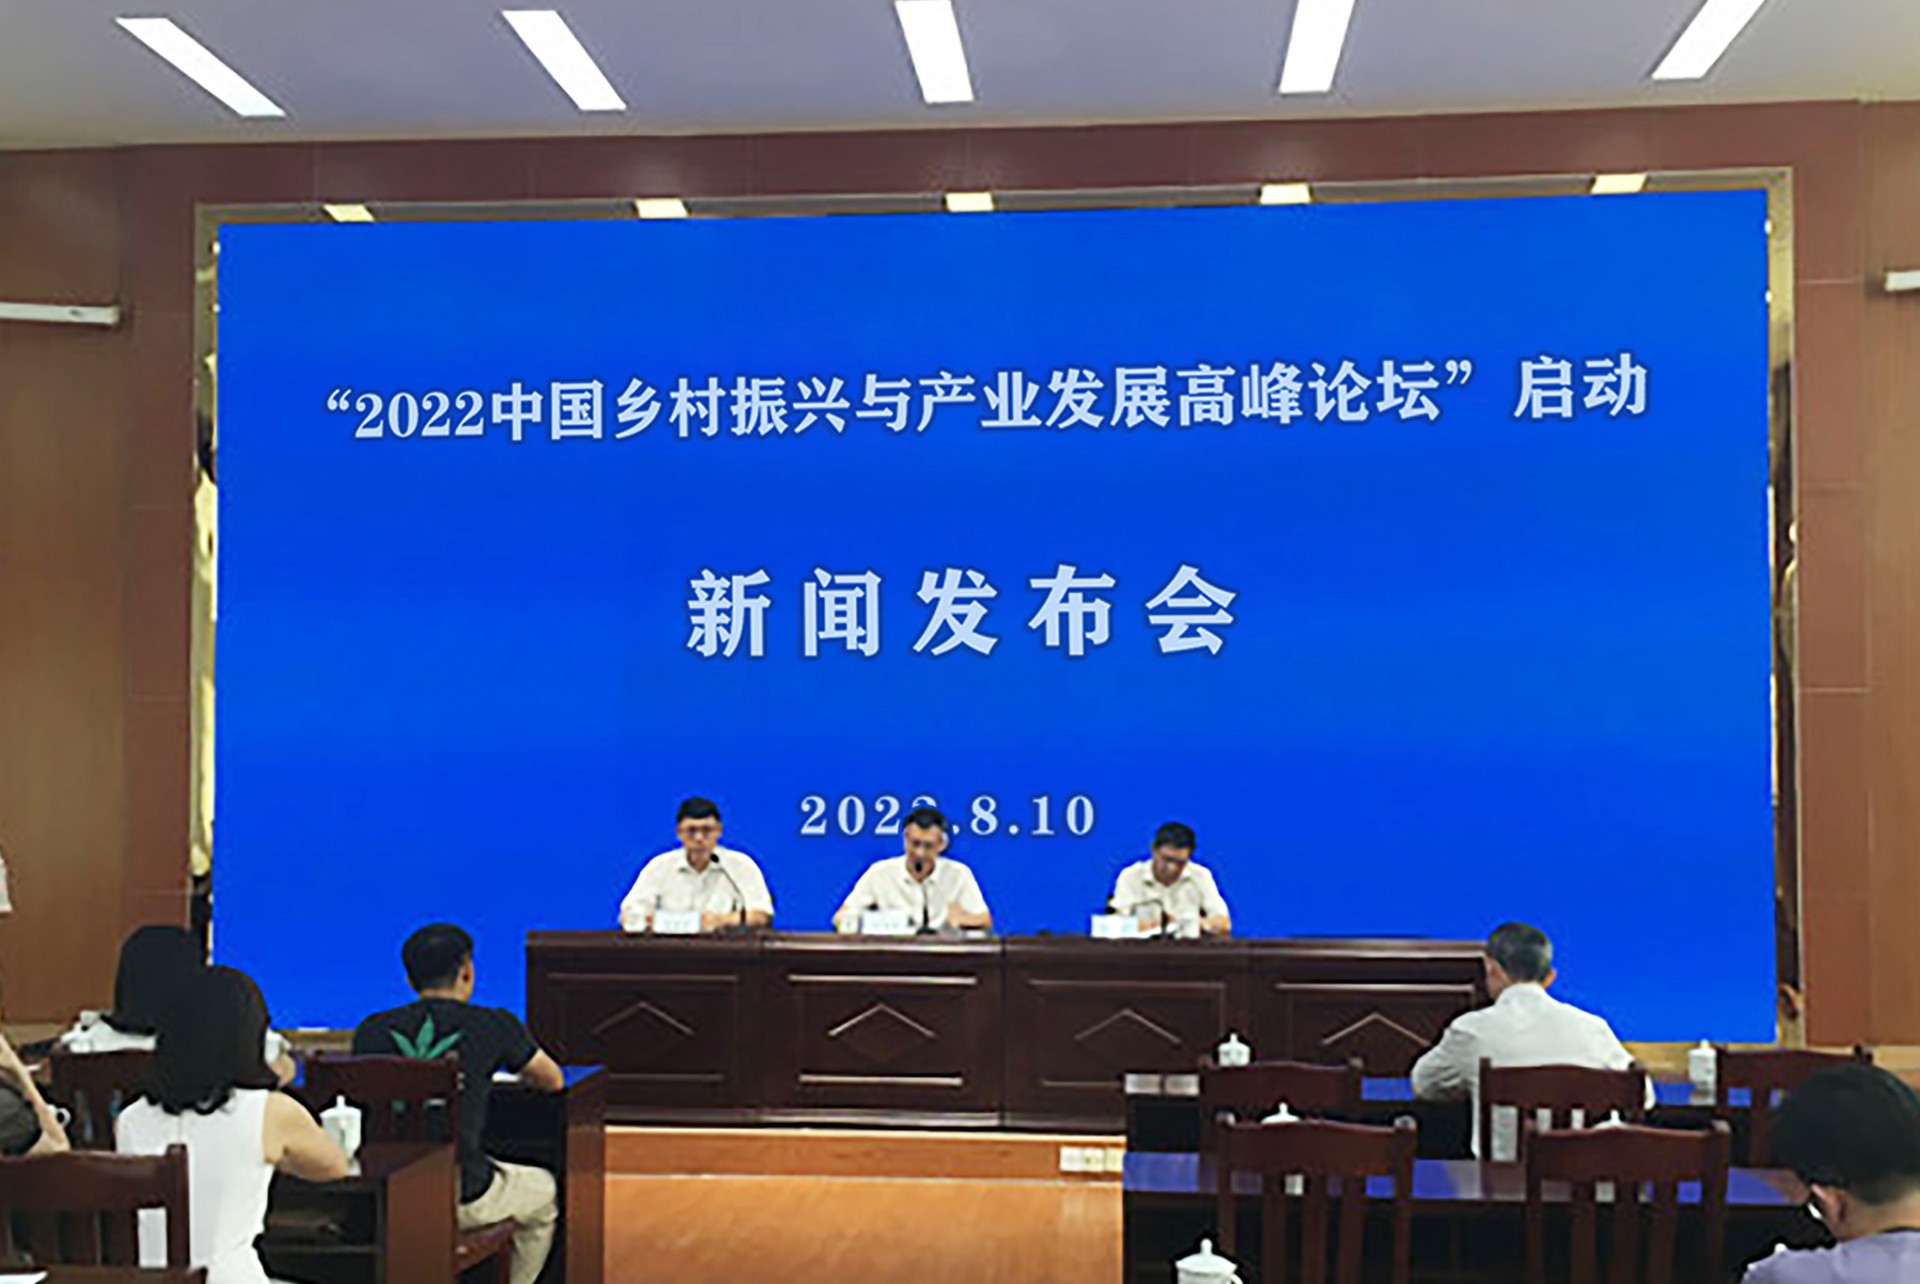 2022“中国乡村振兴与产业发展高峰论坛”在北京启动